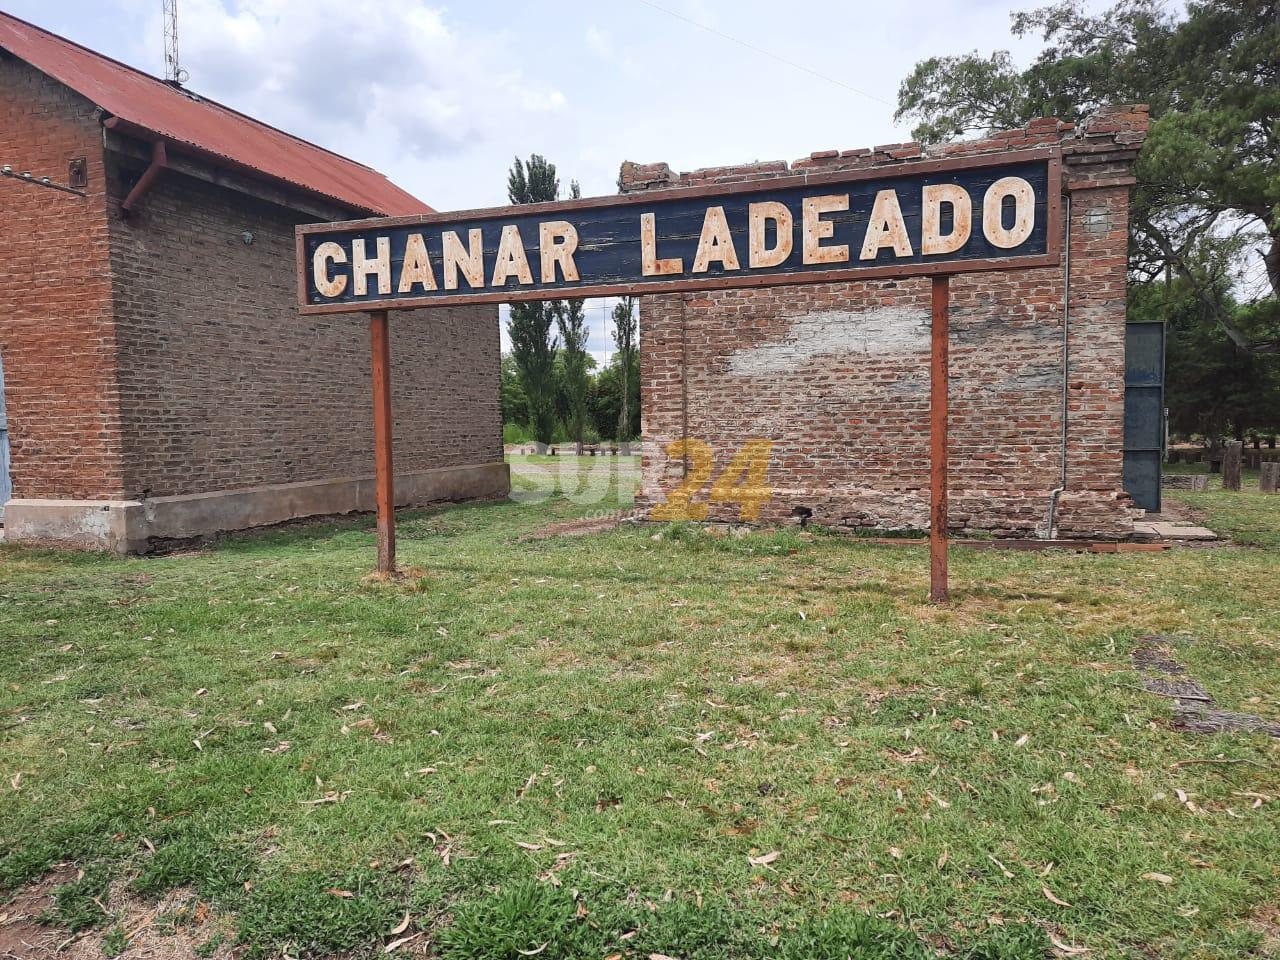 Chañar Ladeado: bonifican hasta el 50 % de impuestos locales a comercios y empresas